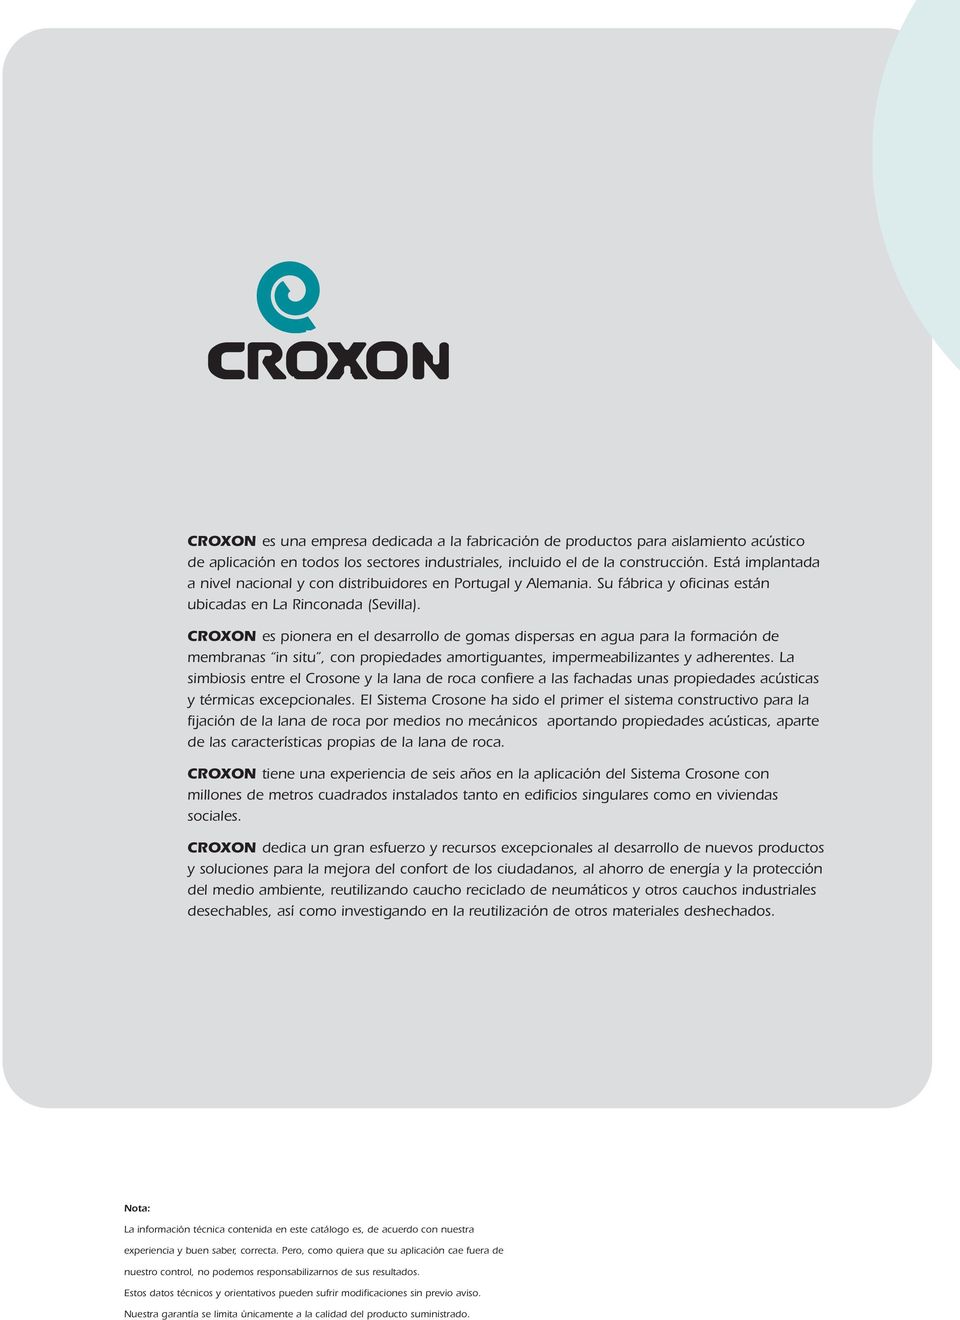 CROXON es pionera en el desarrollo de gomas dispersas en agua para la formación de membranas in situ, con propiedades amortiguantes, impermeabilizantes y adherentes.